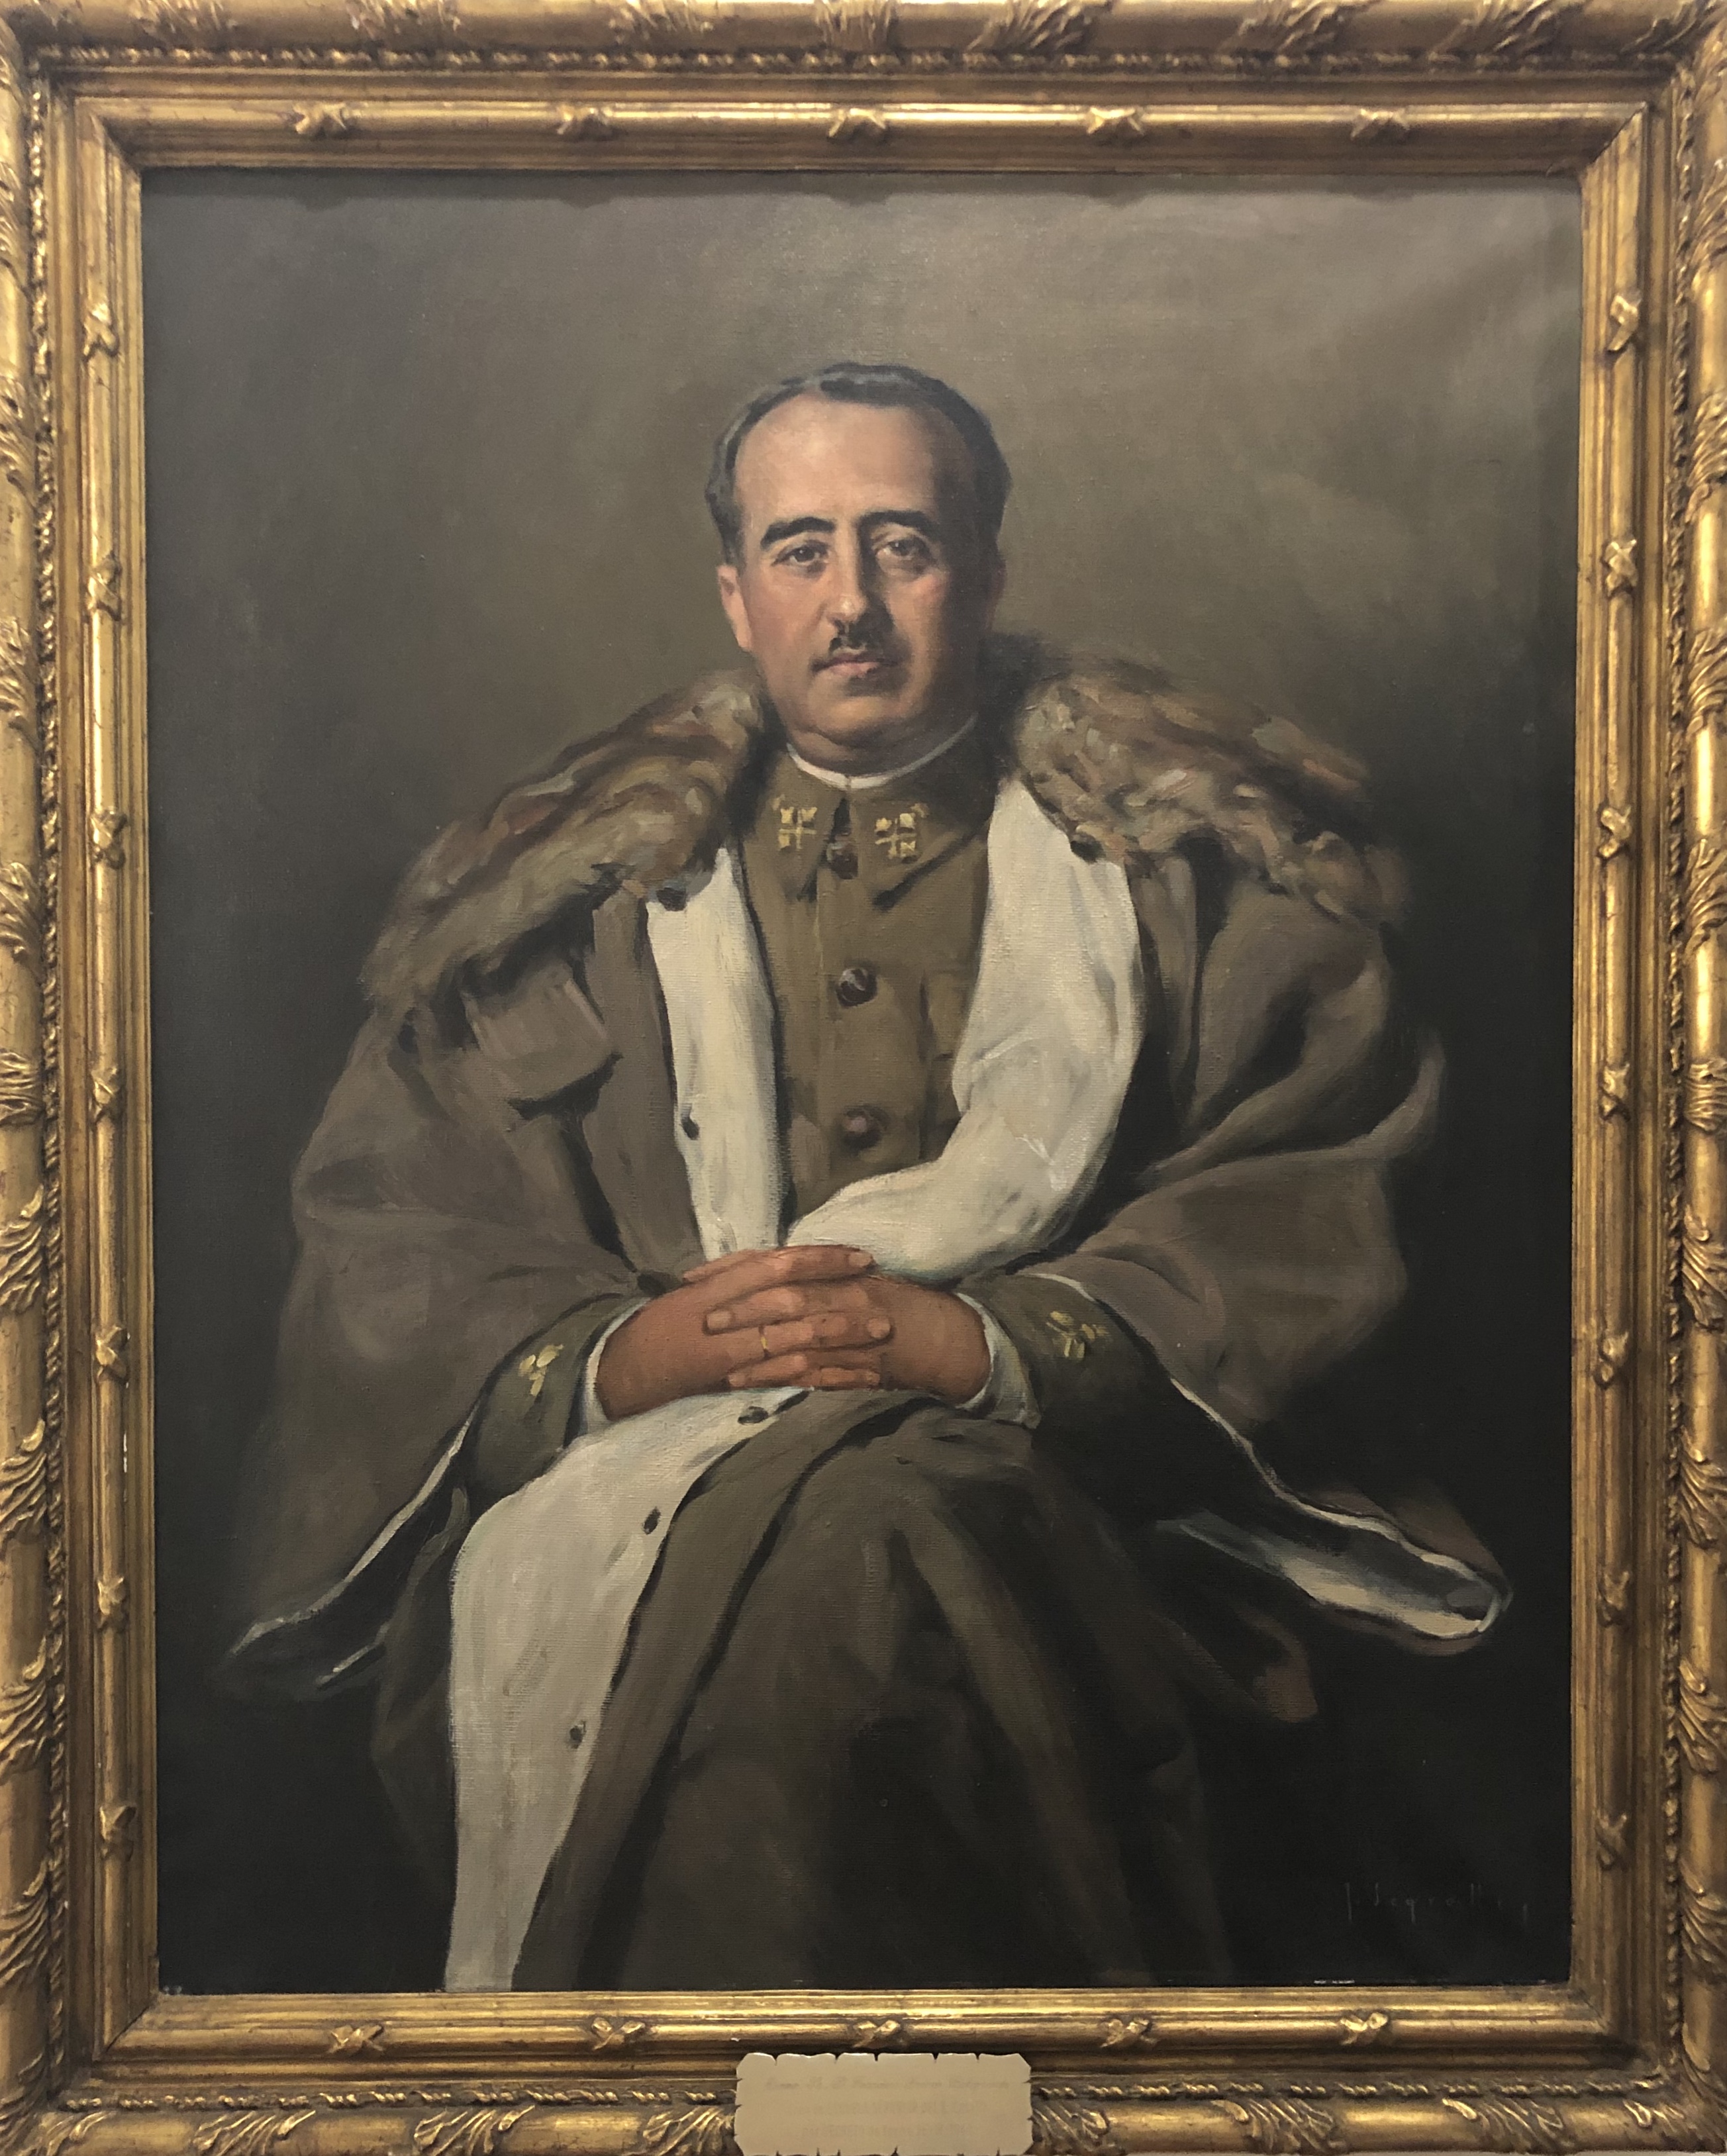 Retrat de Franco pintat per Segrelles per la Diputació. Actualment al Museu Militar de València.